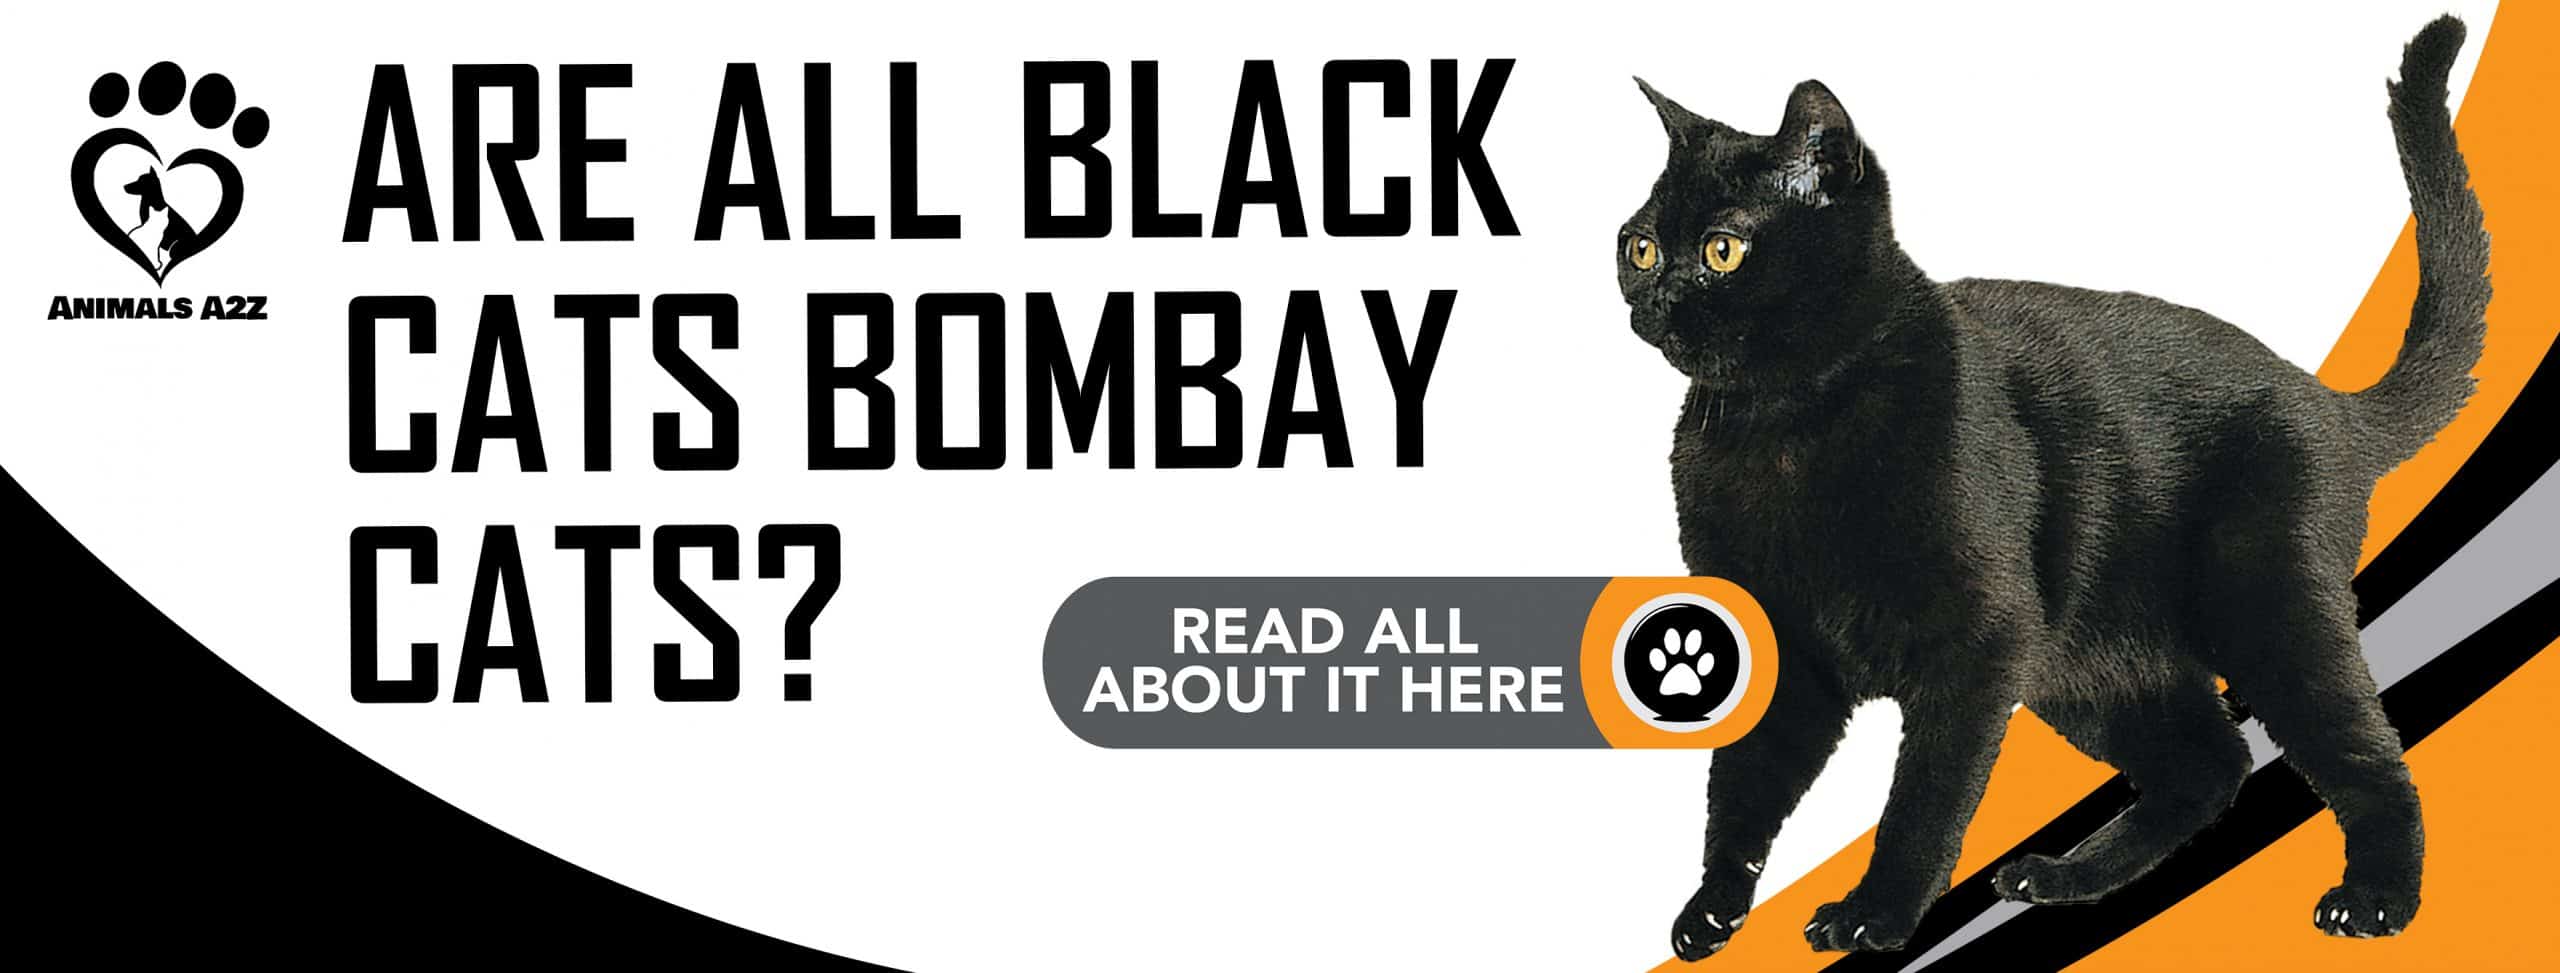 Sind alle schwarzen Katzen Bombay-Katzen?